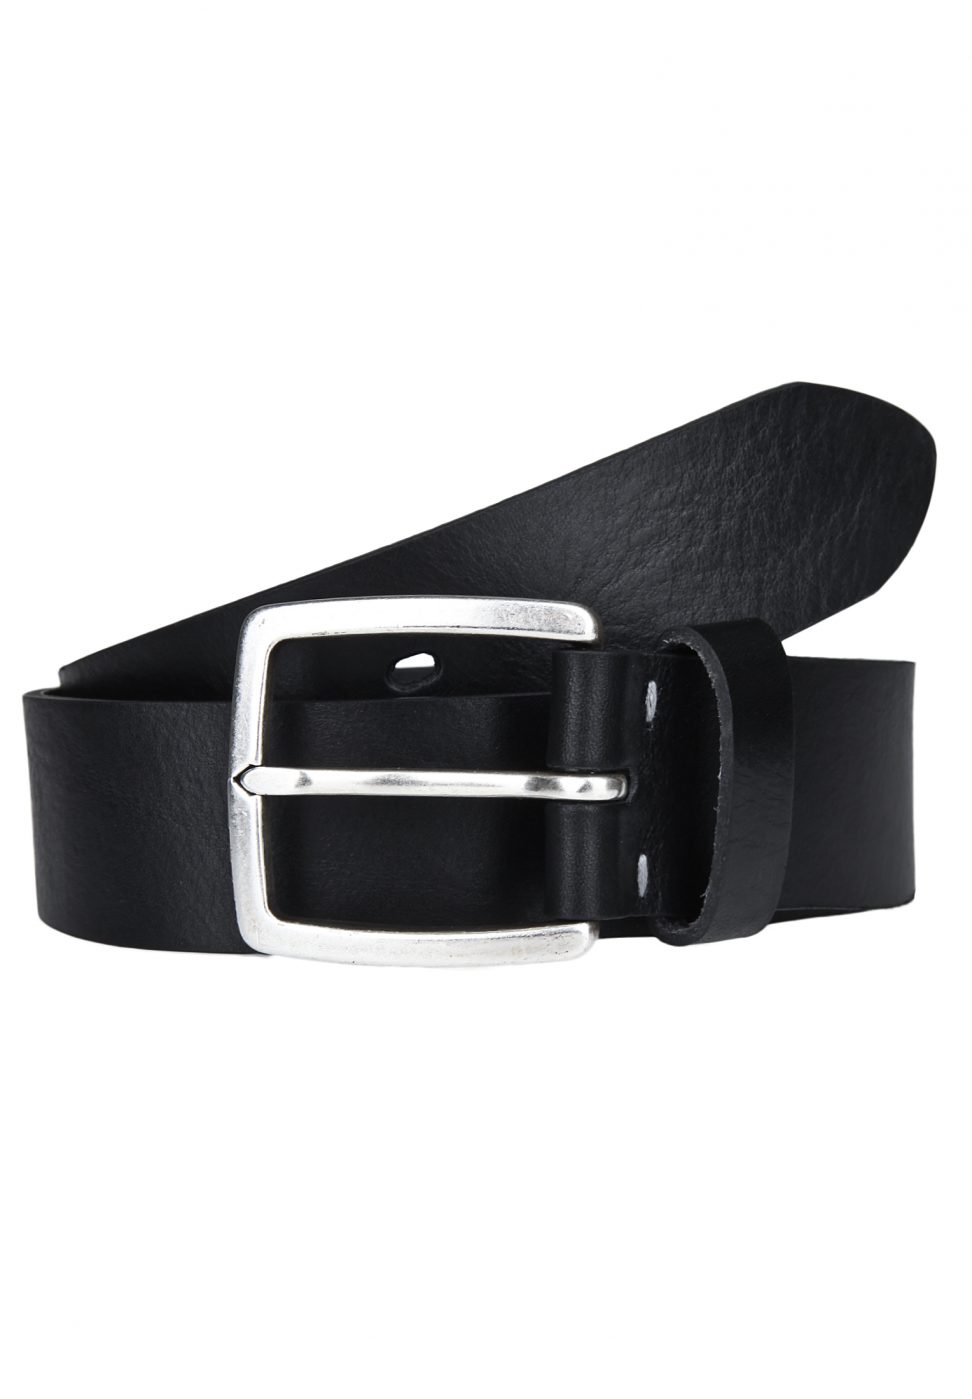 LLOYD Men's Belts Pasek czarny 1015/5 4cm